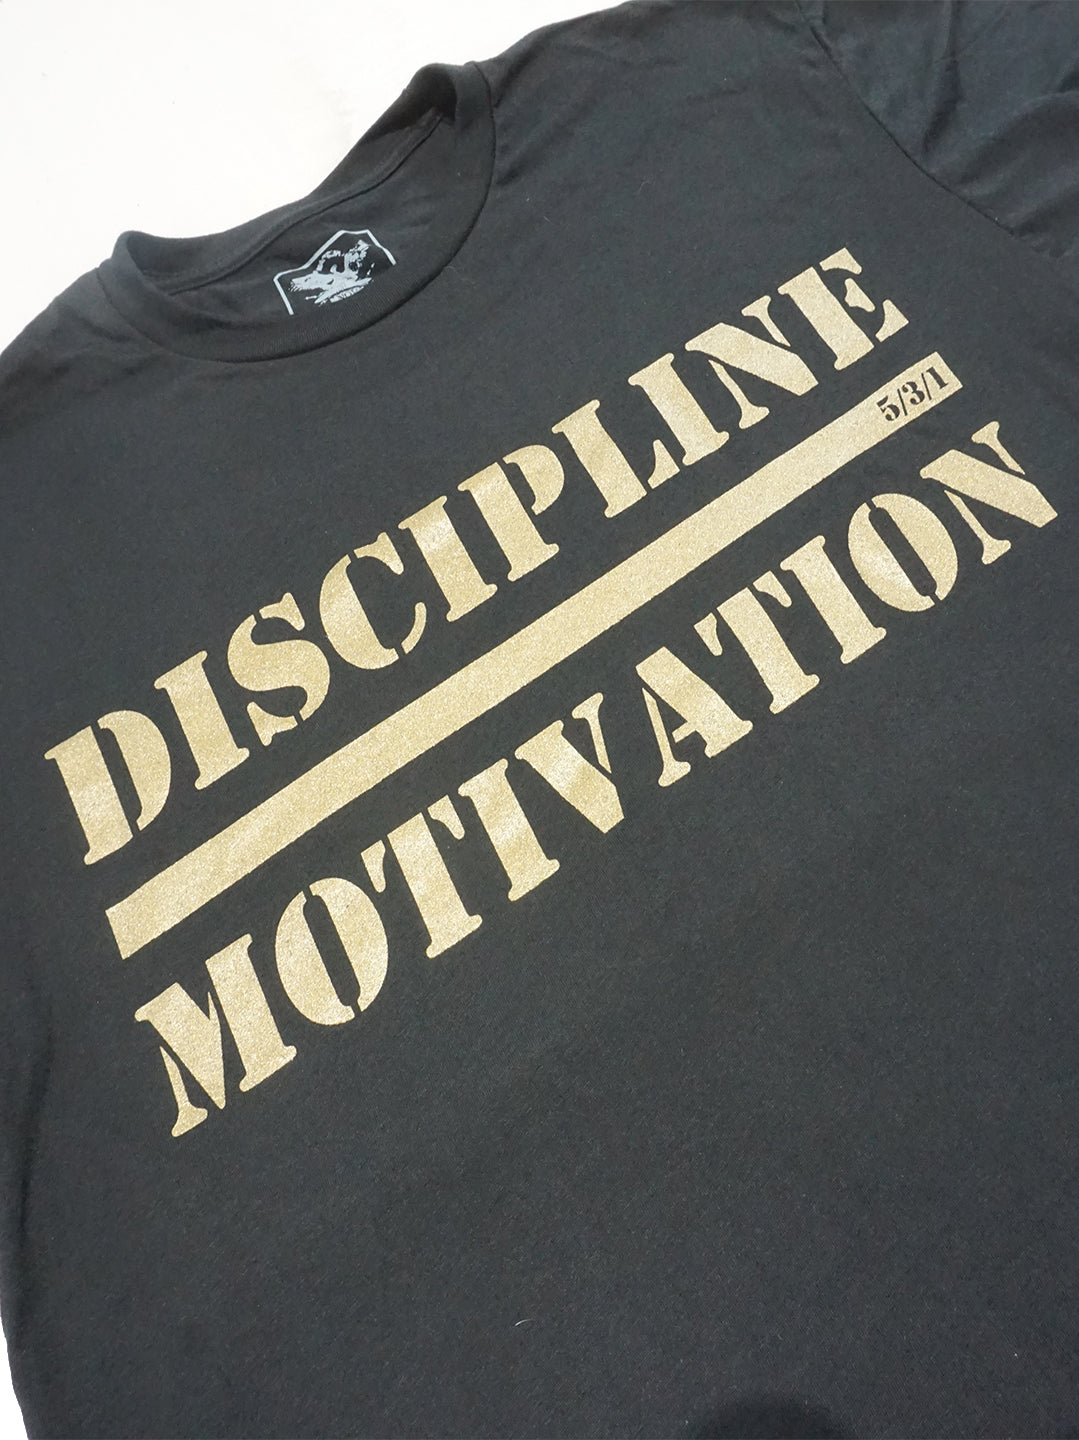 Discipline Over Motivation Tee - Black/Gold